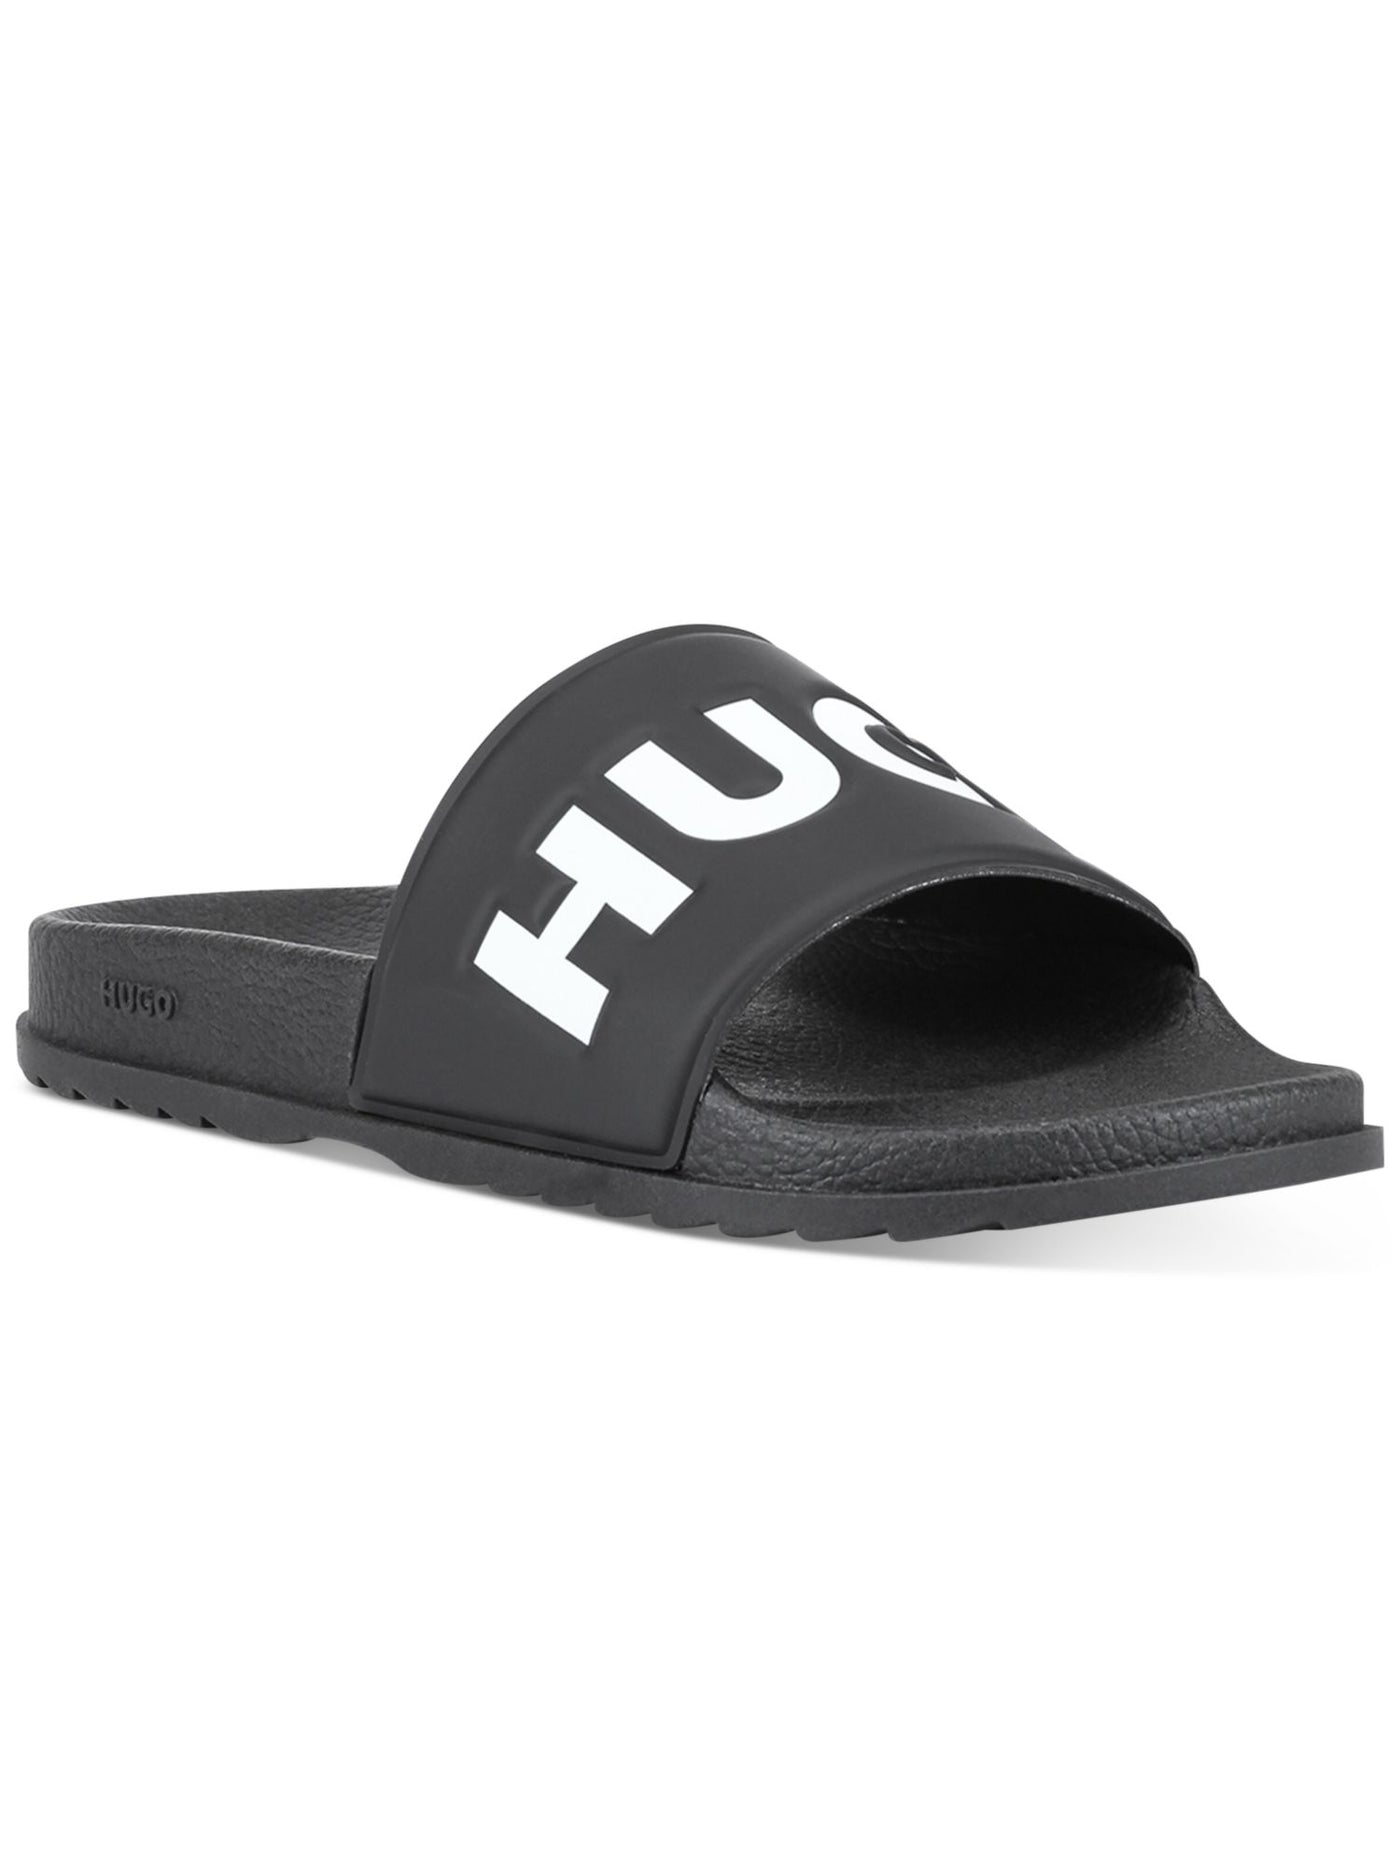 HUGO Mens Black Logo Comfort Match Open Toe Platform Slip On Slide Sandals Shoes 45